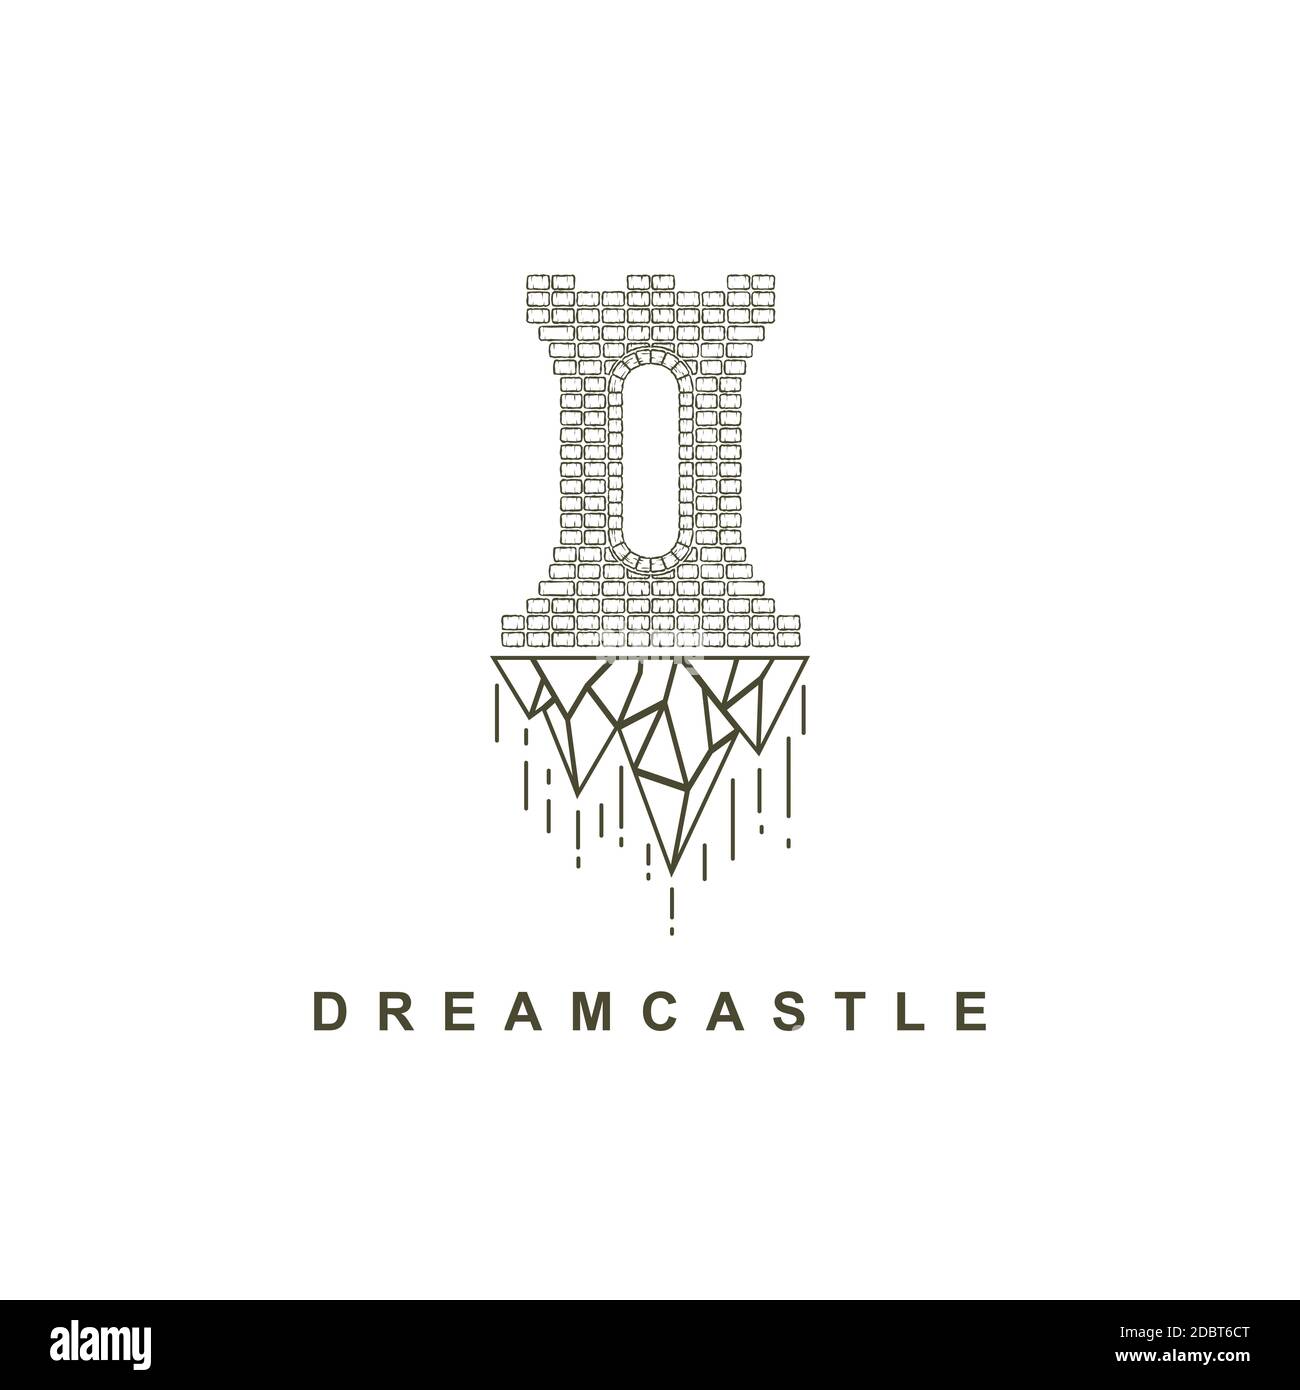 Dream castle logo design vector template Stock Vector